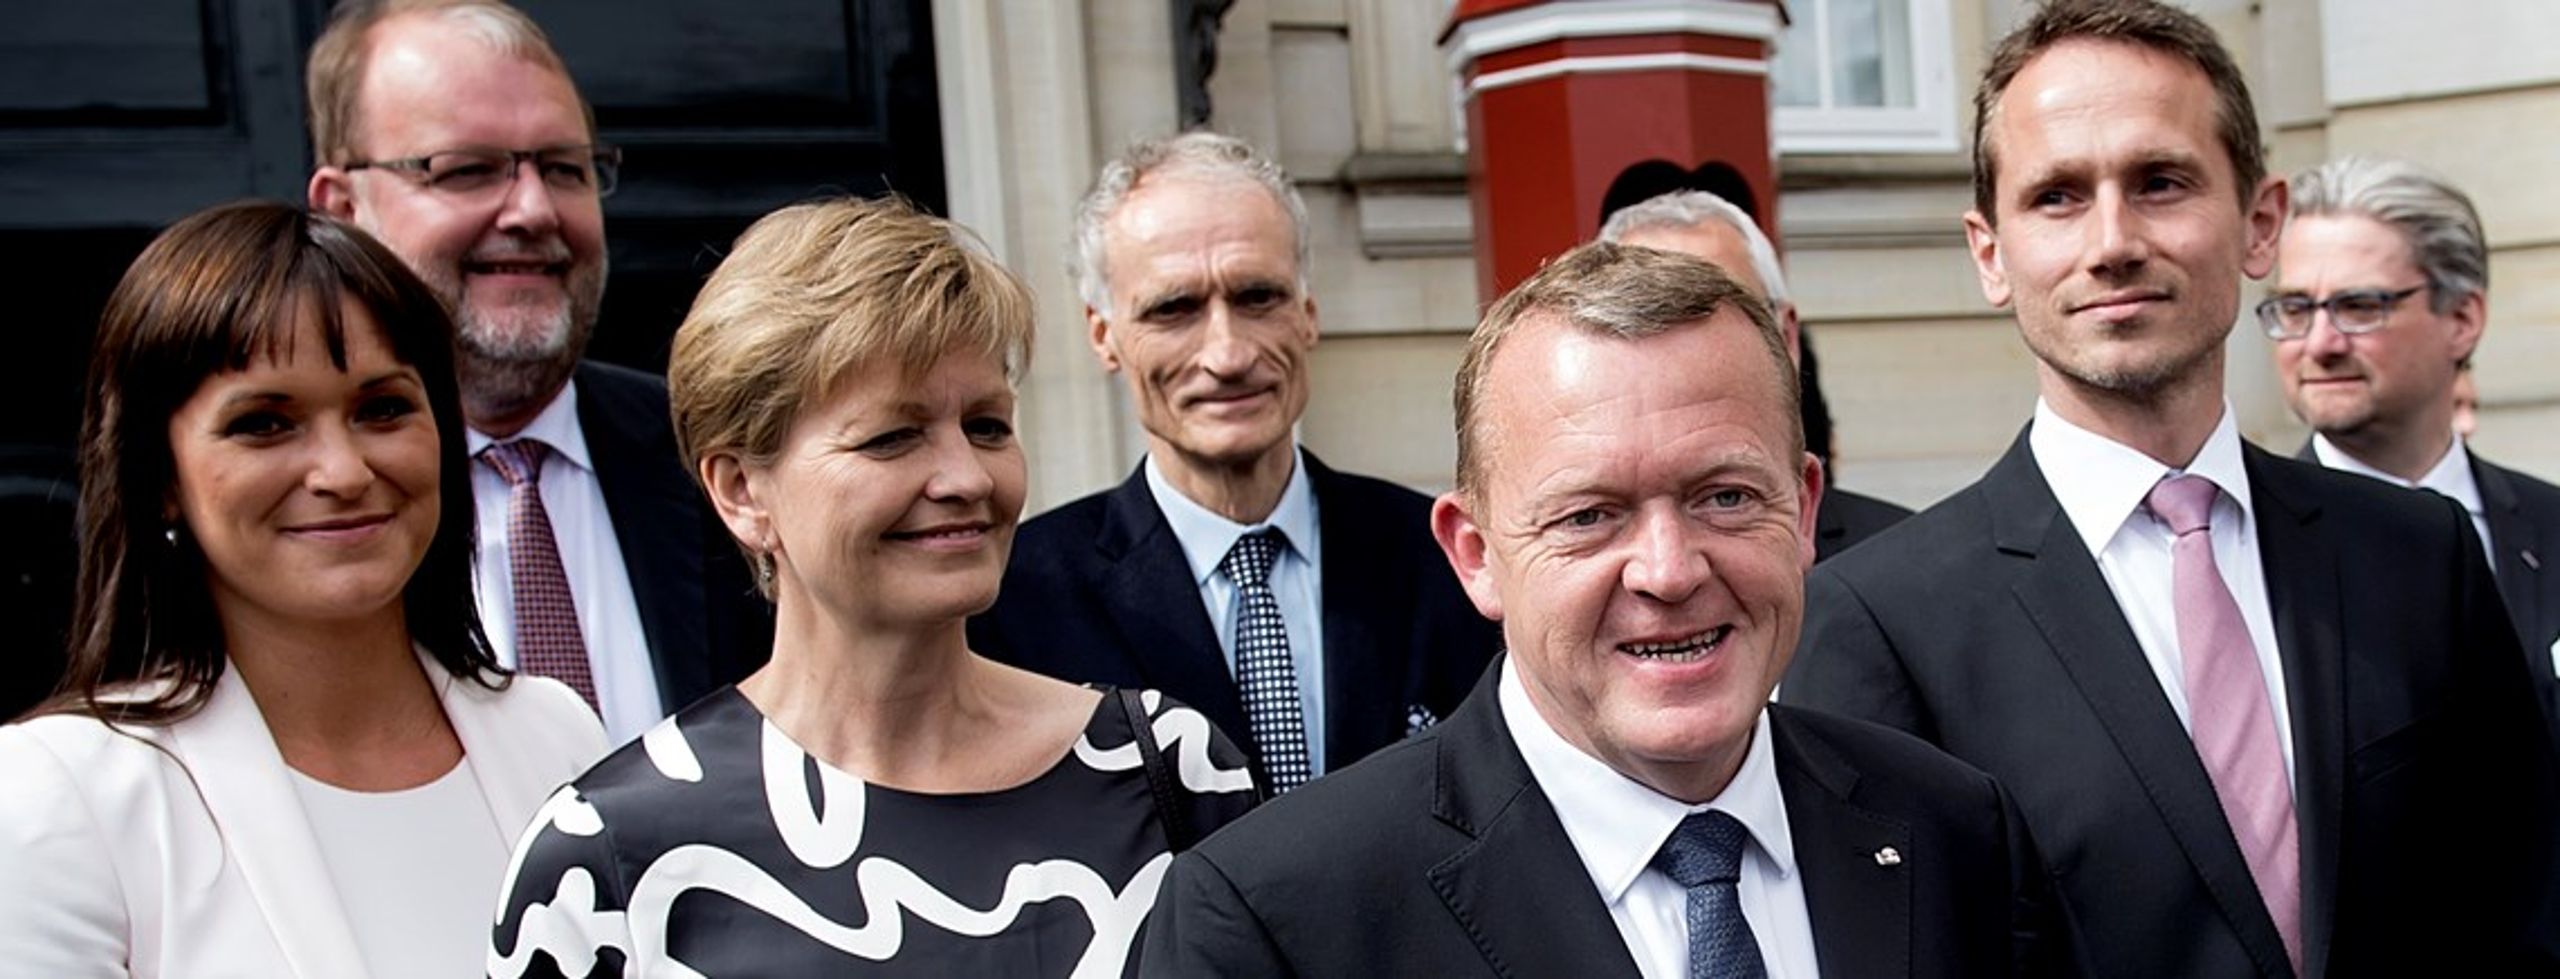 Statsminister Lars Løkke Rasmussen (V) præsenterede ny regering søndag. DN er bestemt ikke tilfredse. <br>